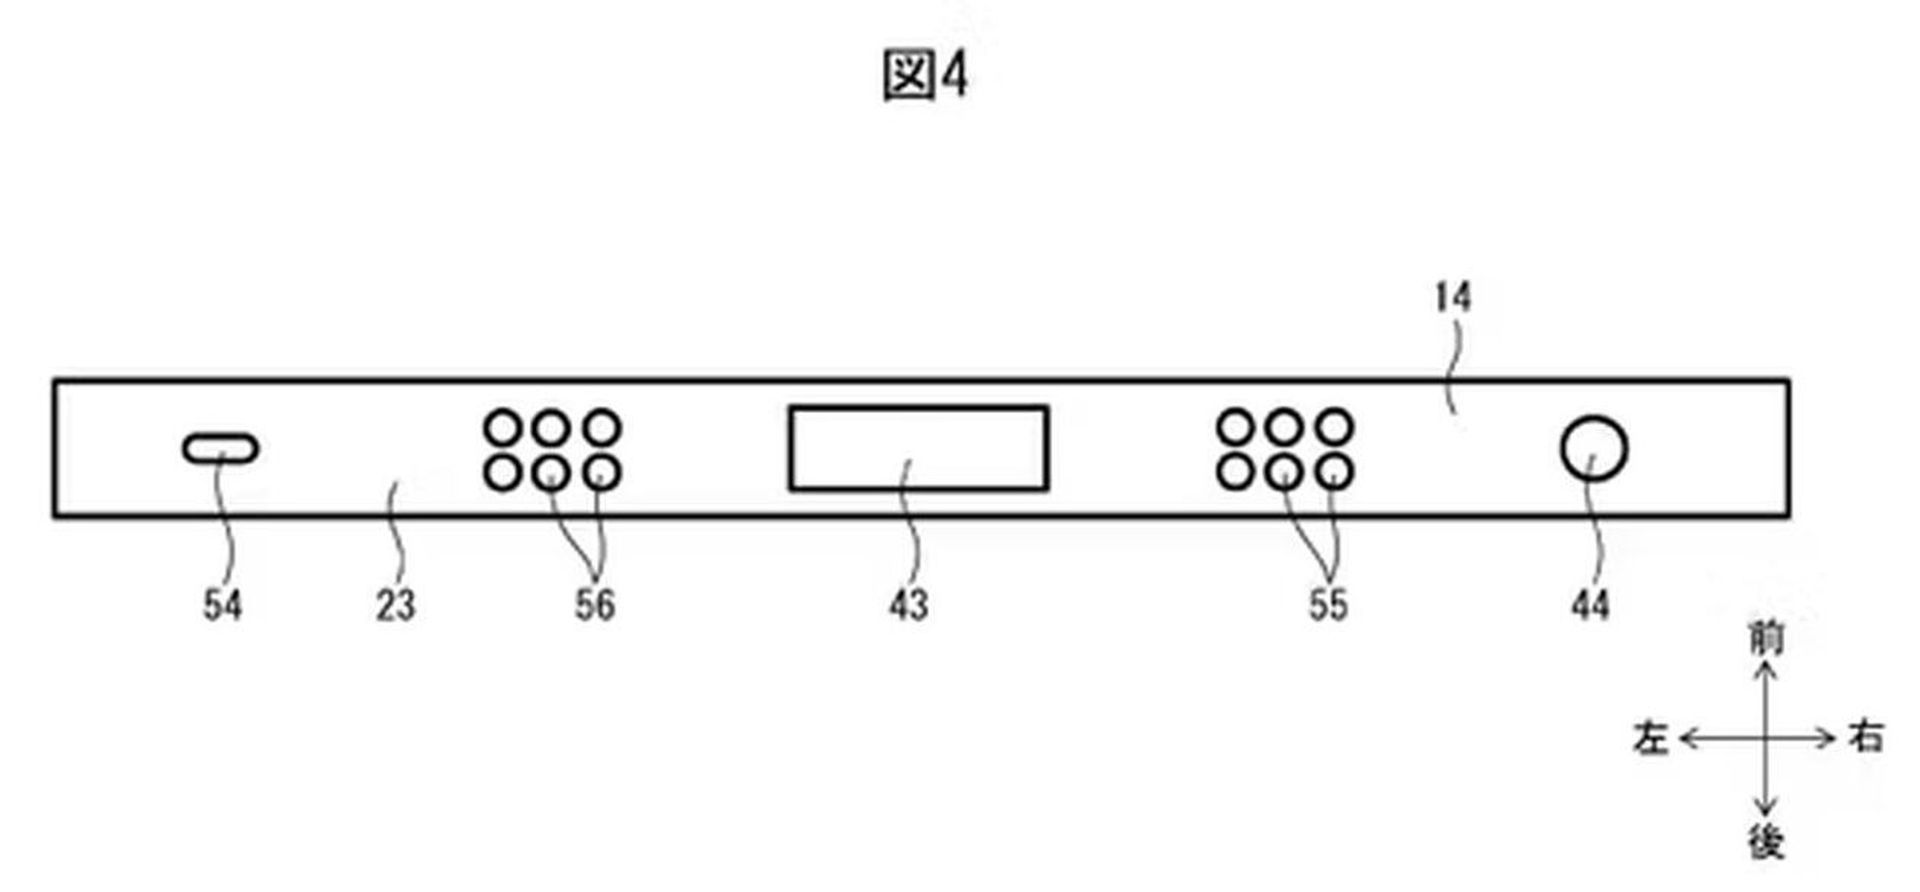 Patent na Nintendo Switch 2